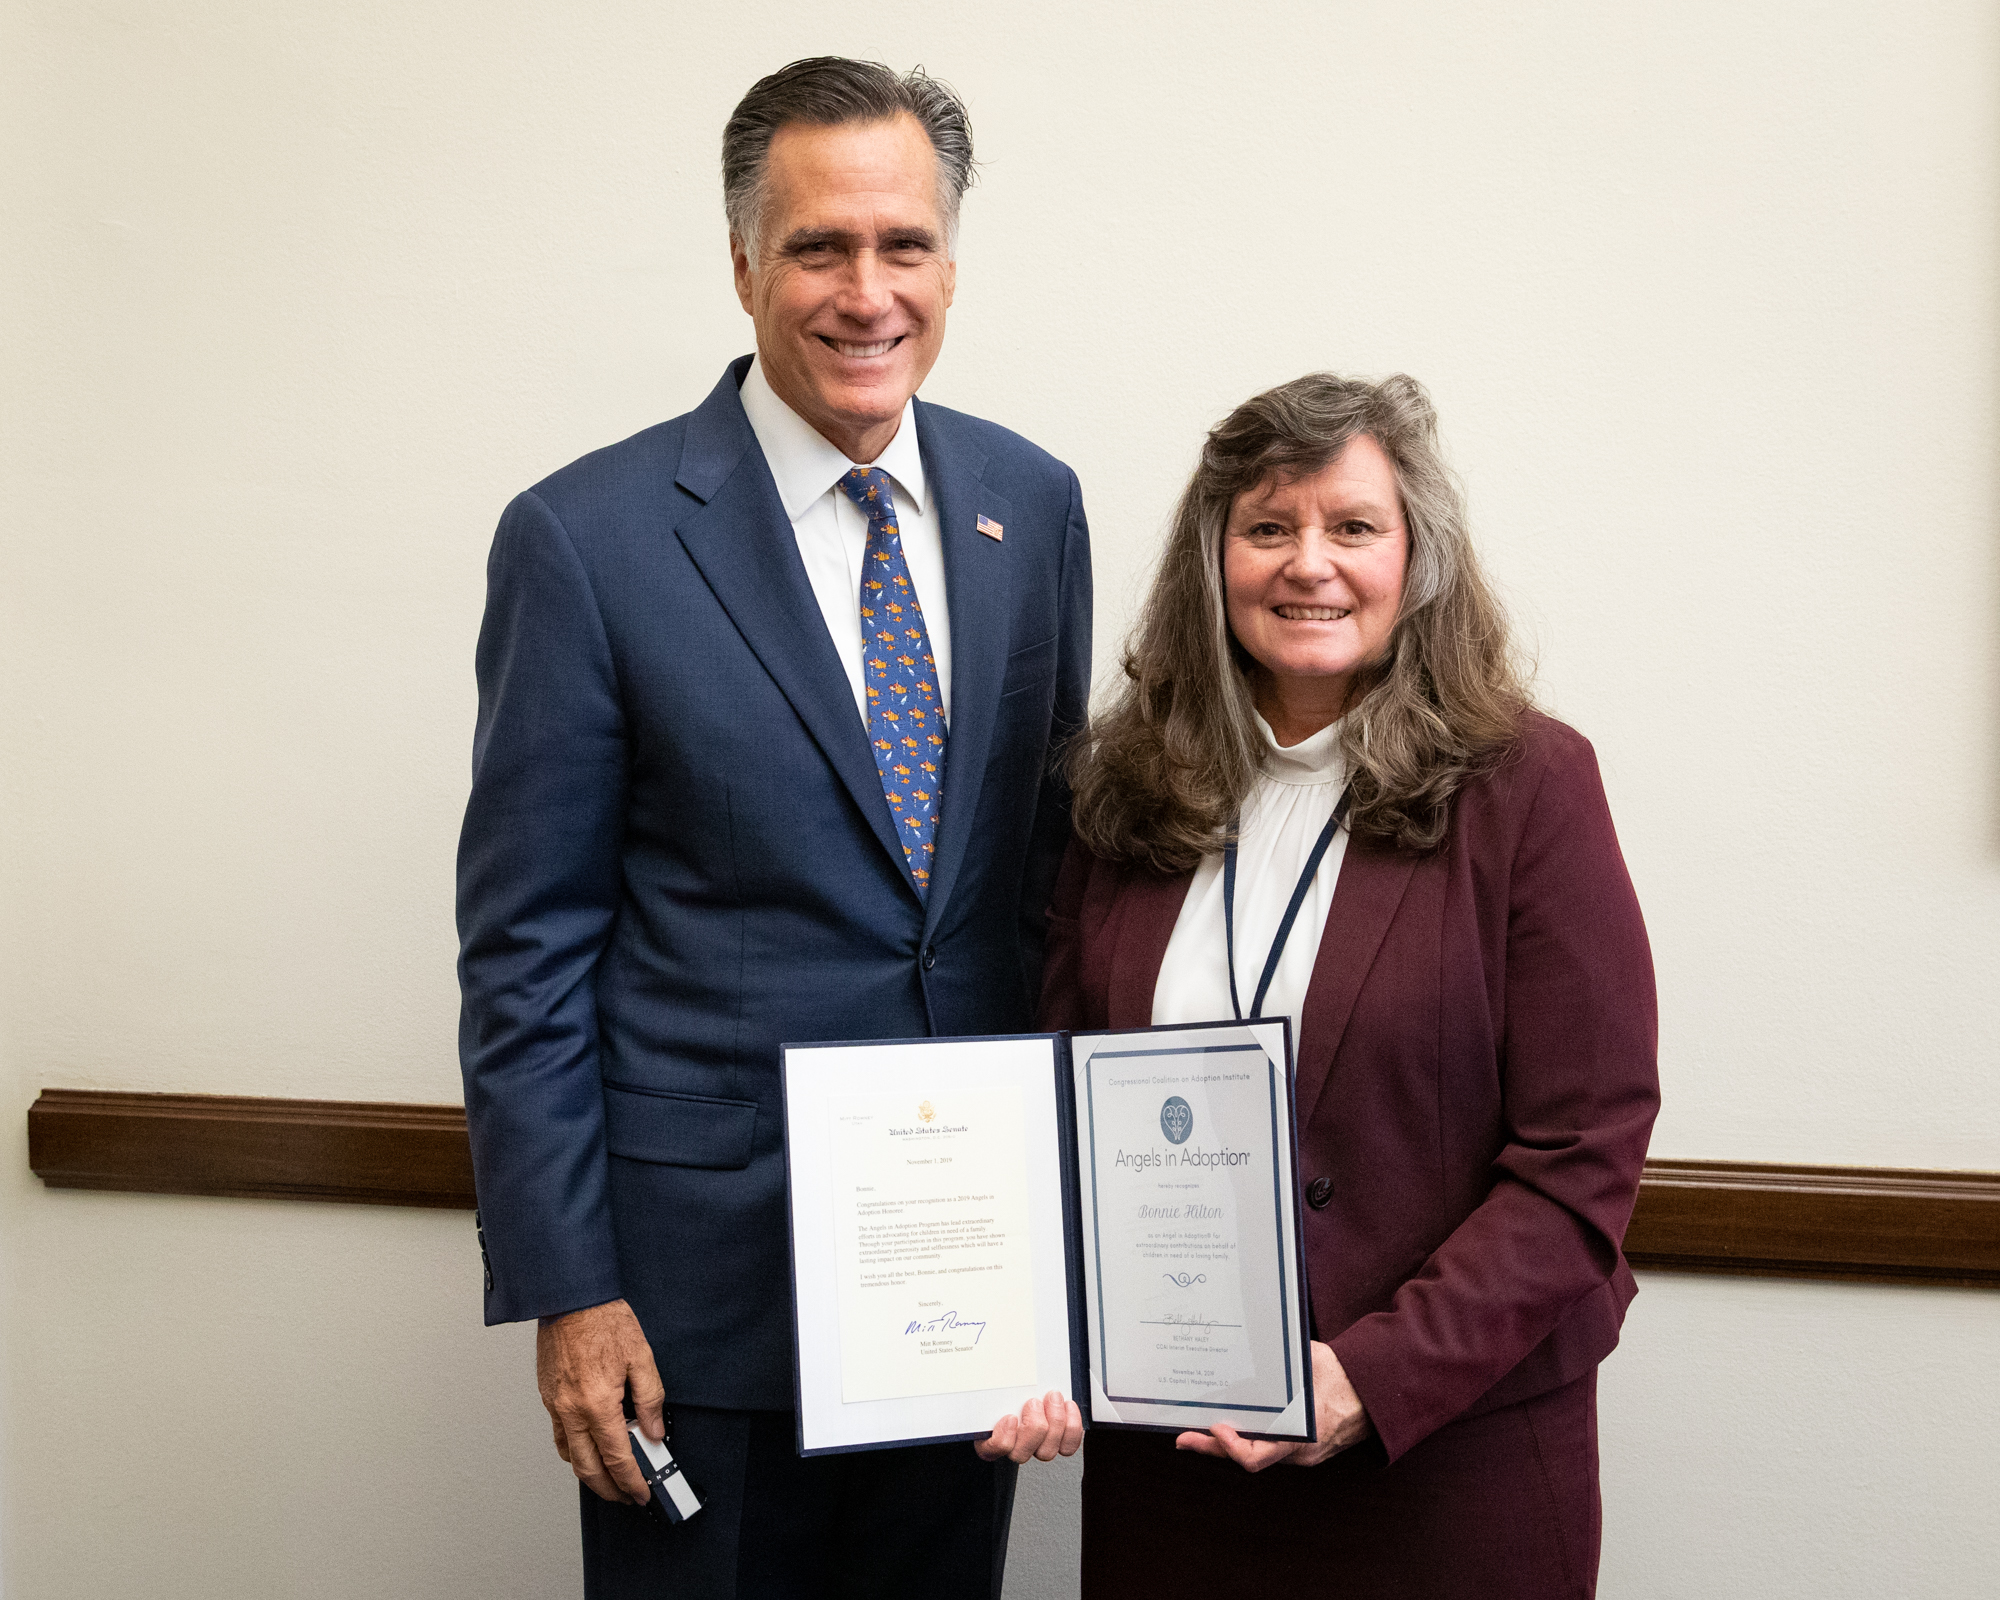 Utah 2019 Angel in Adoption honoree